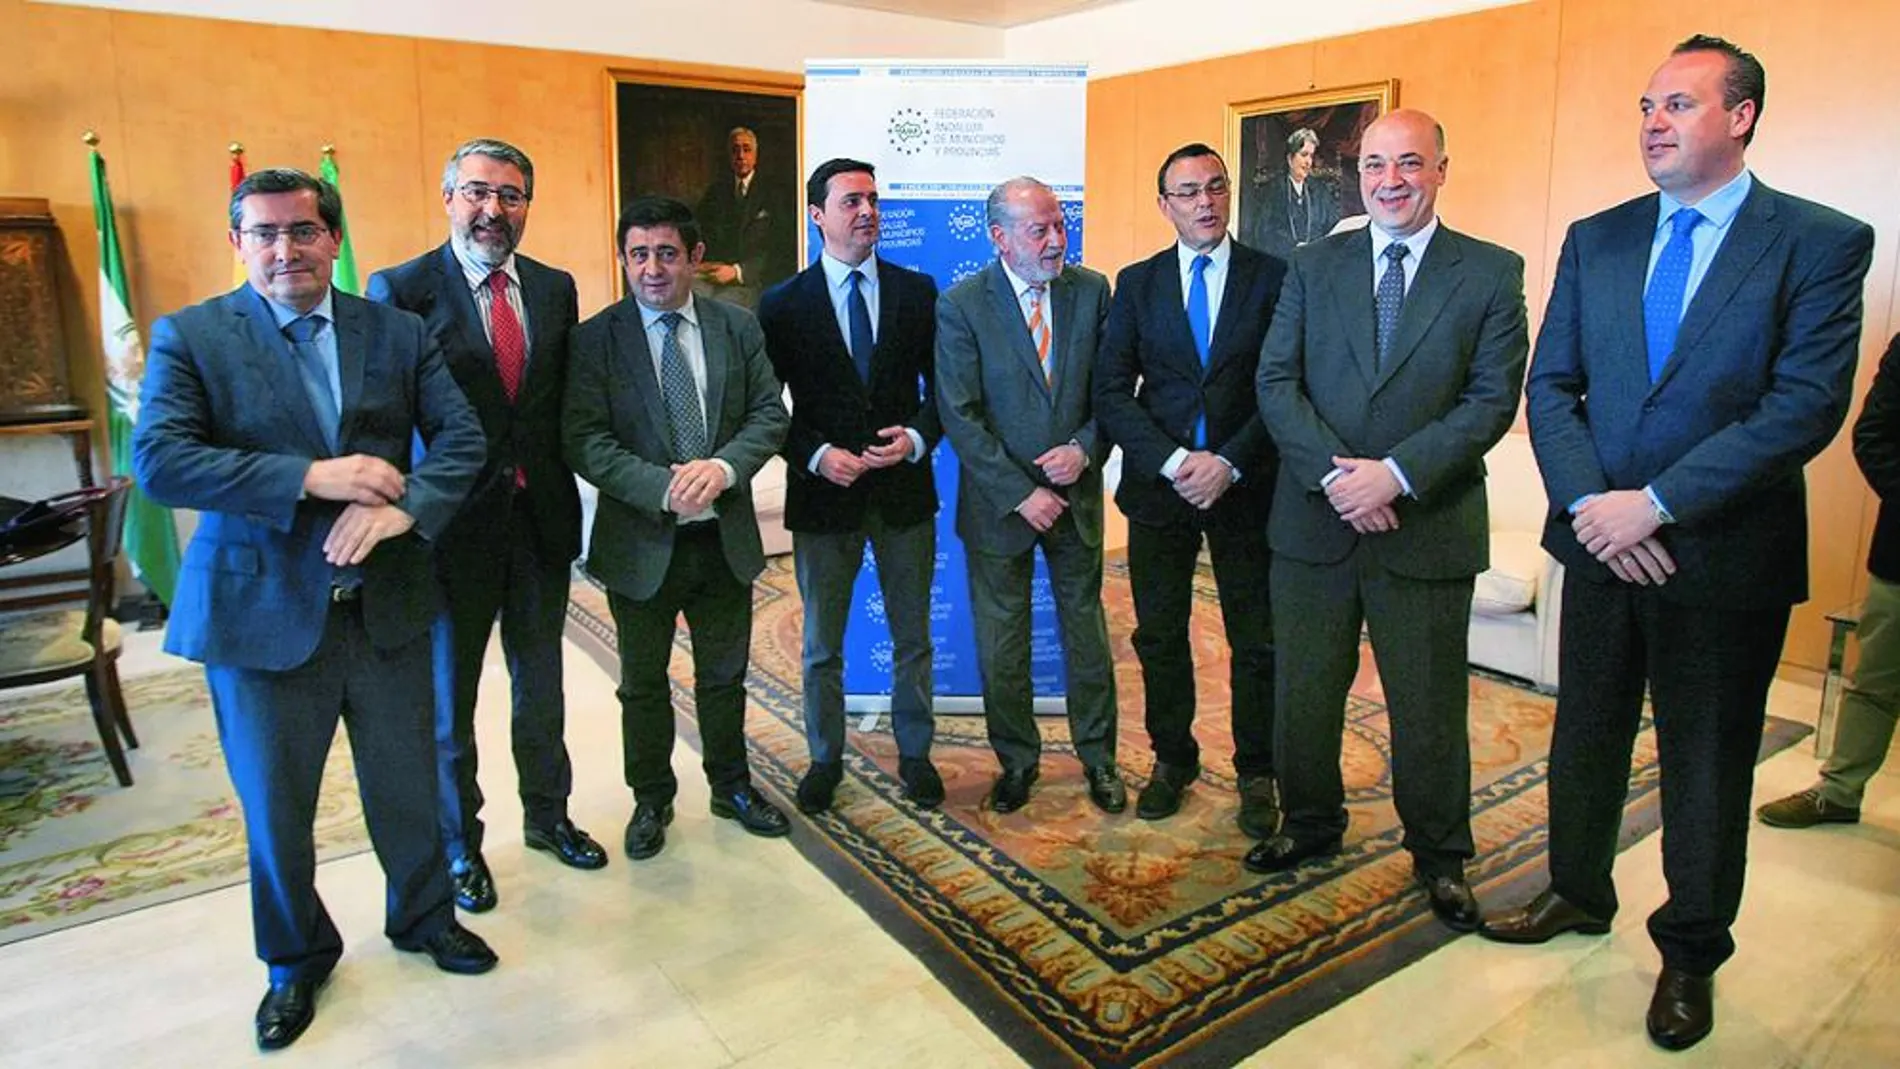 José Entrena, Fco. Salado, Fco. Reyes, Javier Aureliano García, Villalobos, Ignacio Caraballo, Antonio Ruiz y J. C. Ruiz Boix